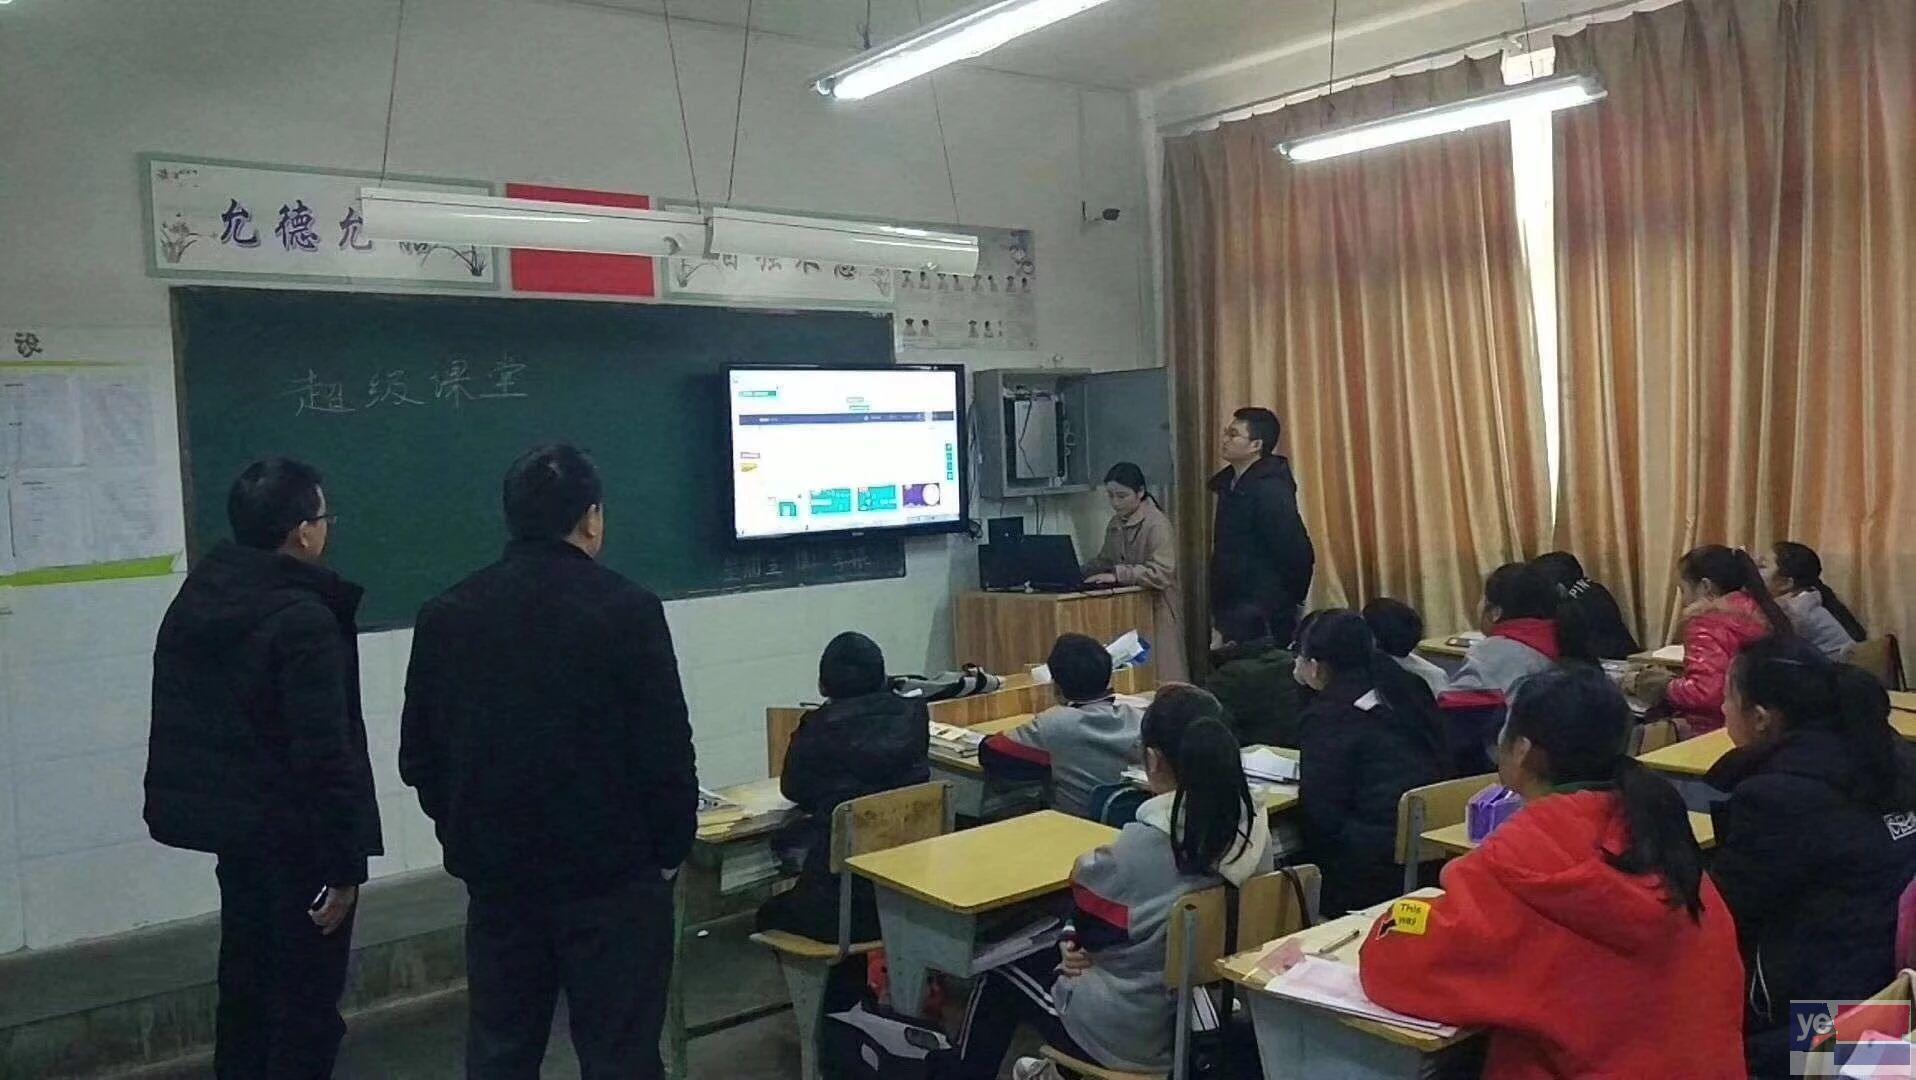 庆阳超级课堂中小学教育,以十倍的速度获取知识